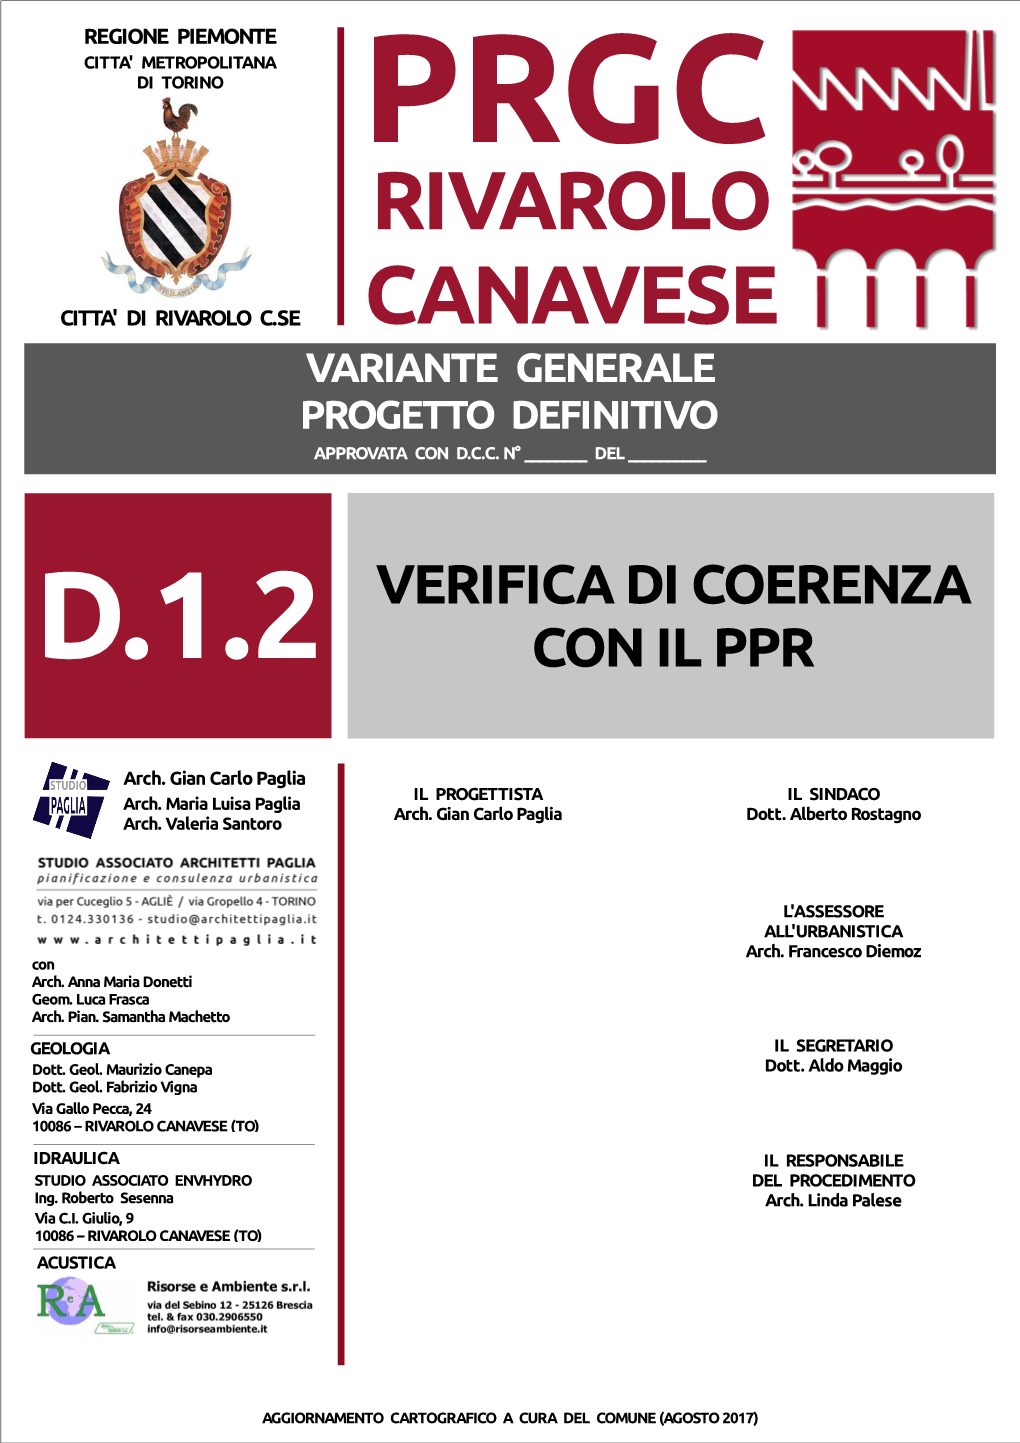 Rivarolo Canavese Citta' Di Rivarolo C.Se Canavese Variante Generale Progetto Definitivo Approvata Con D.C.C